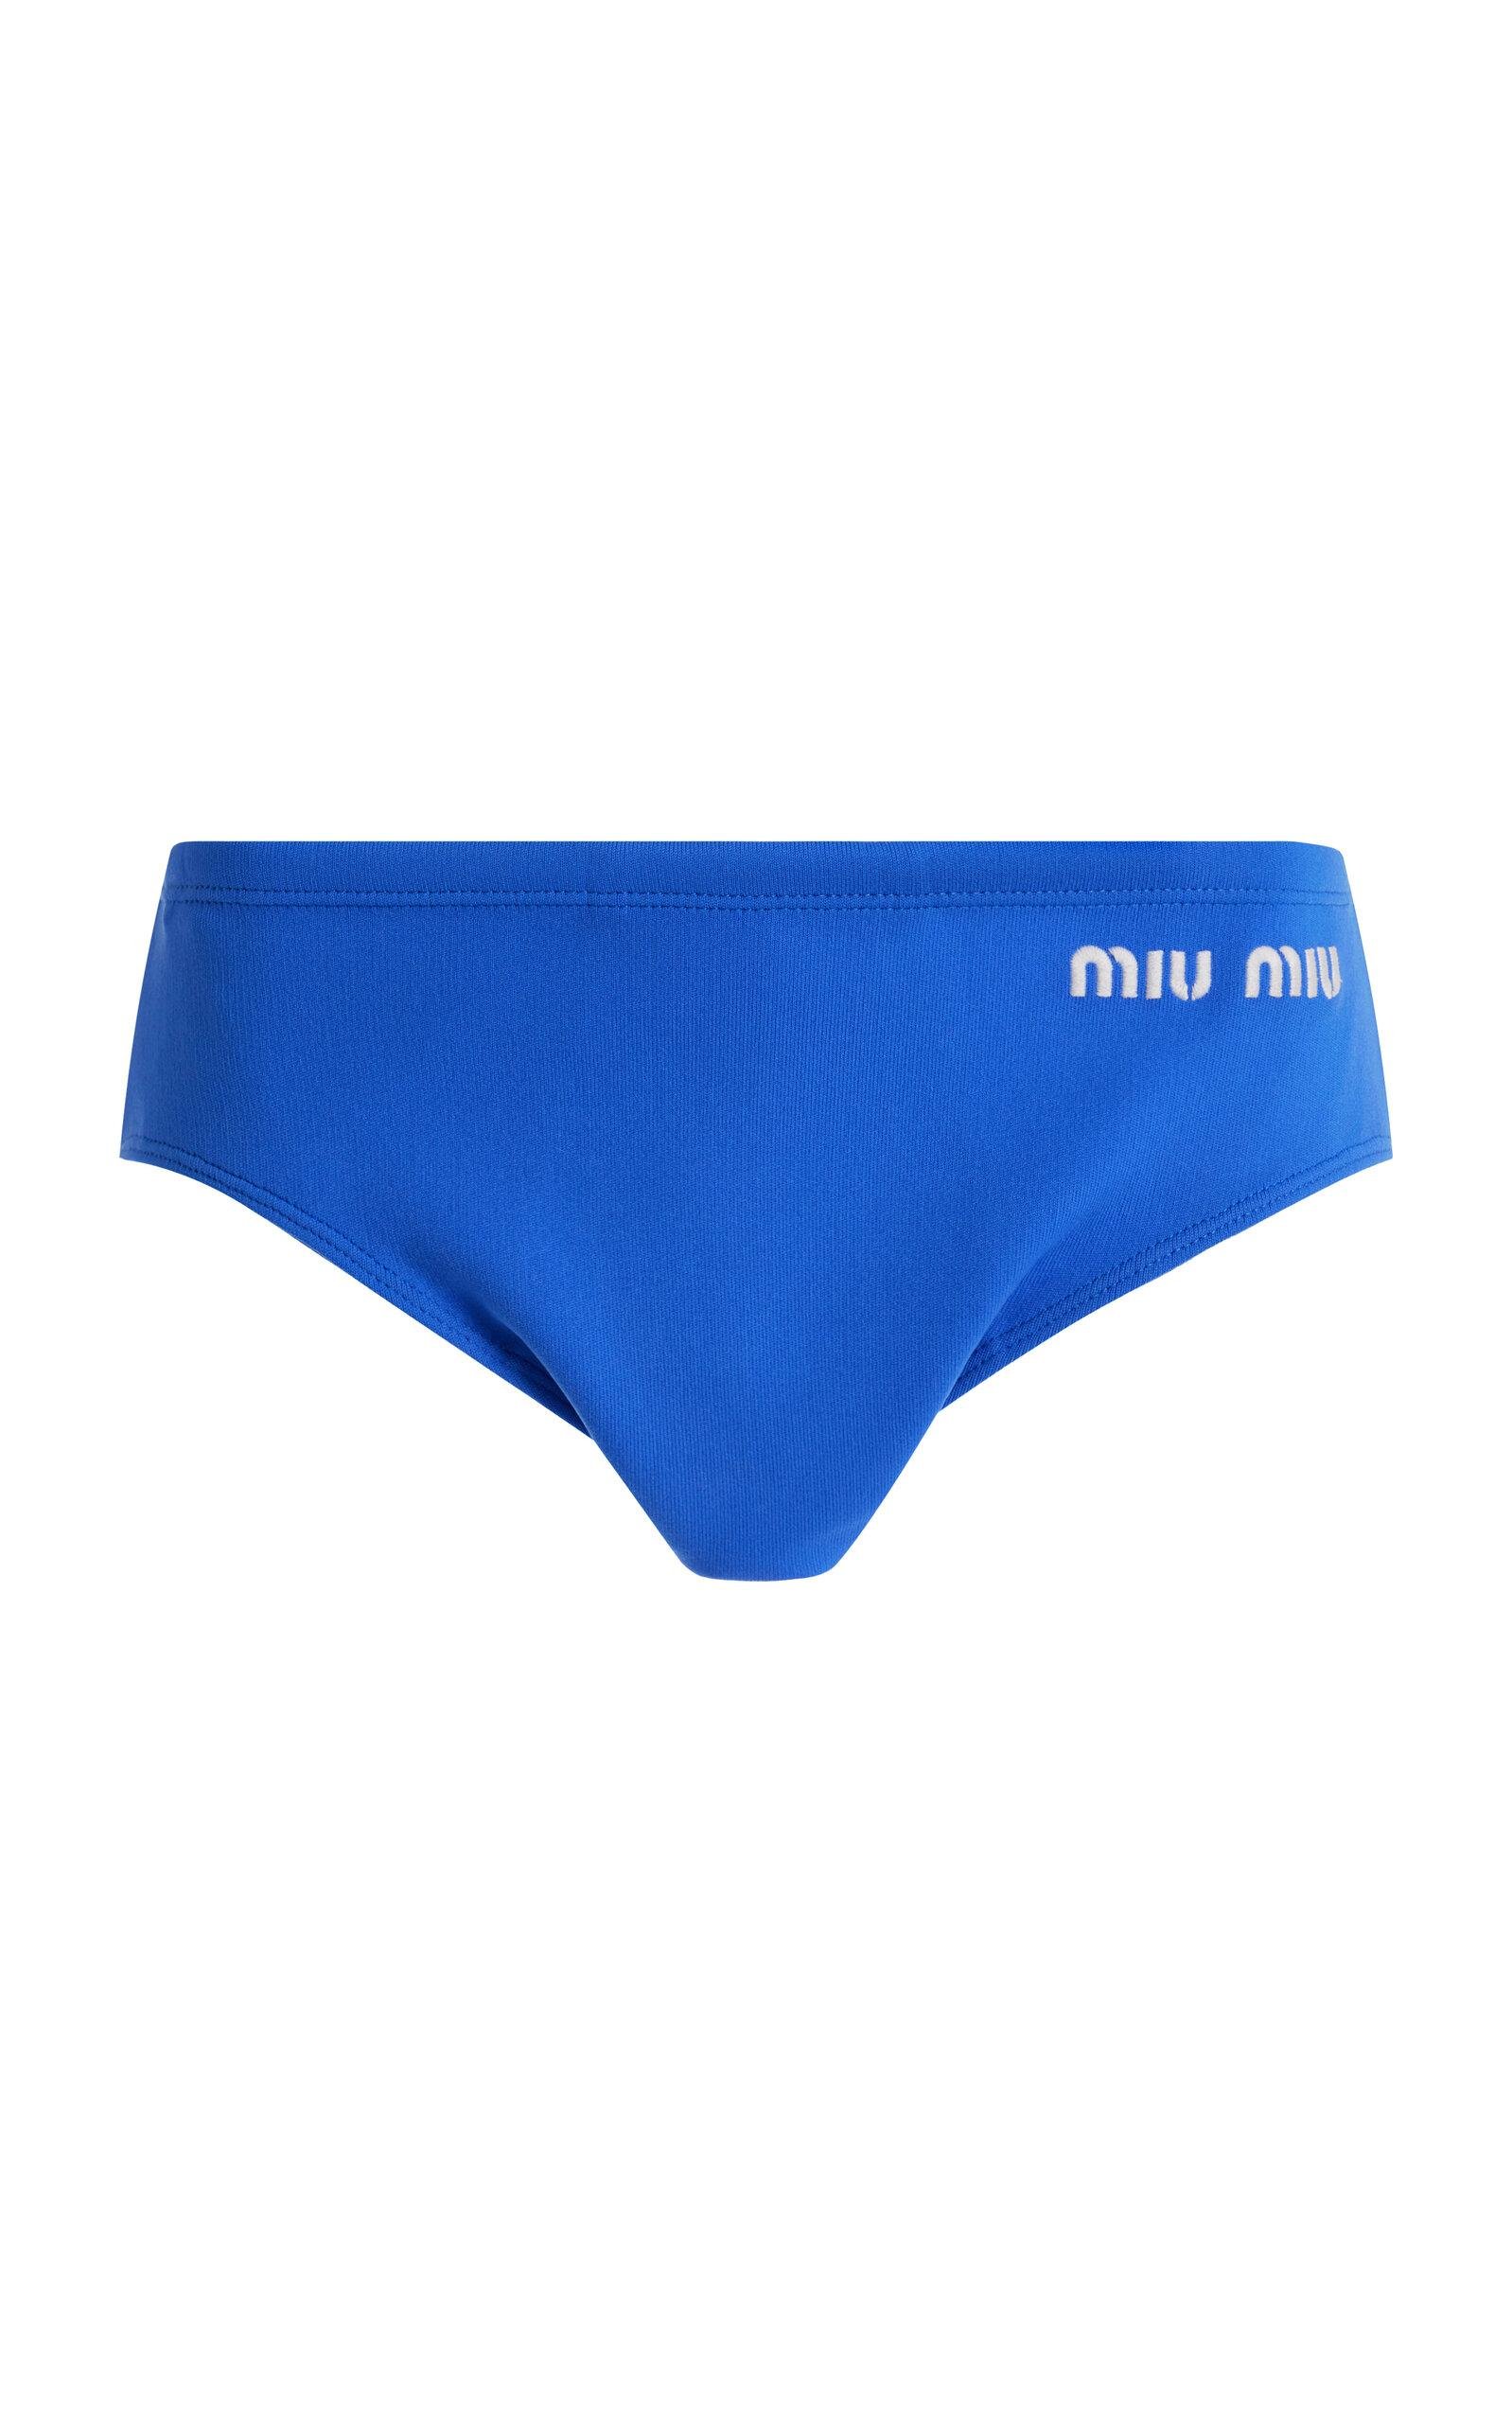 Miu Miu - Logo-Knit Nylon Panties - Blue - IT 40 - Moda Operandi by MIU MIU